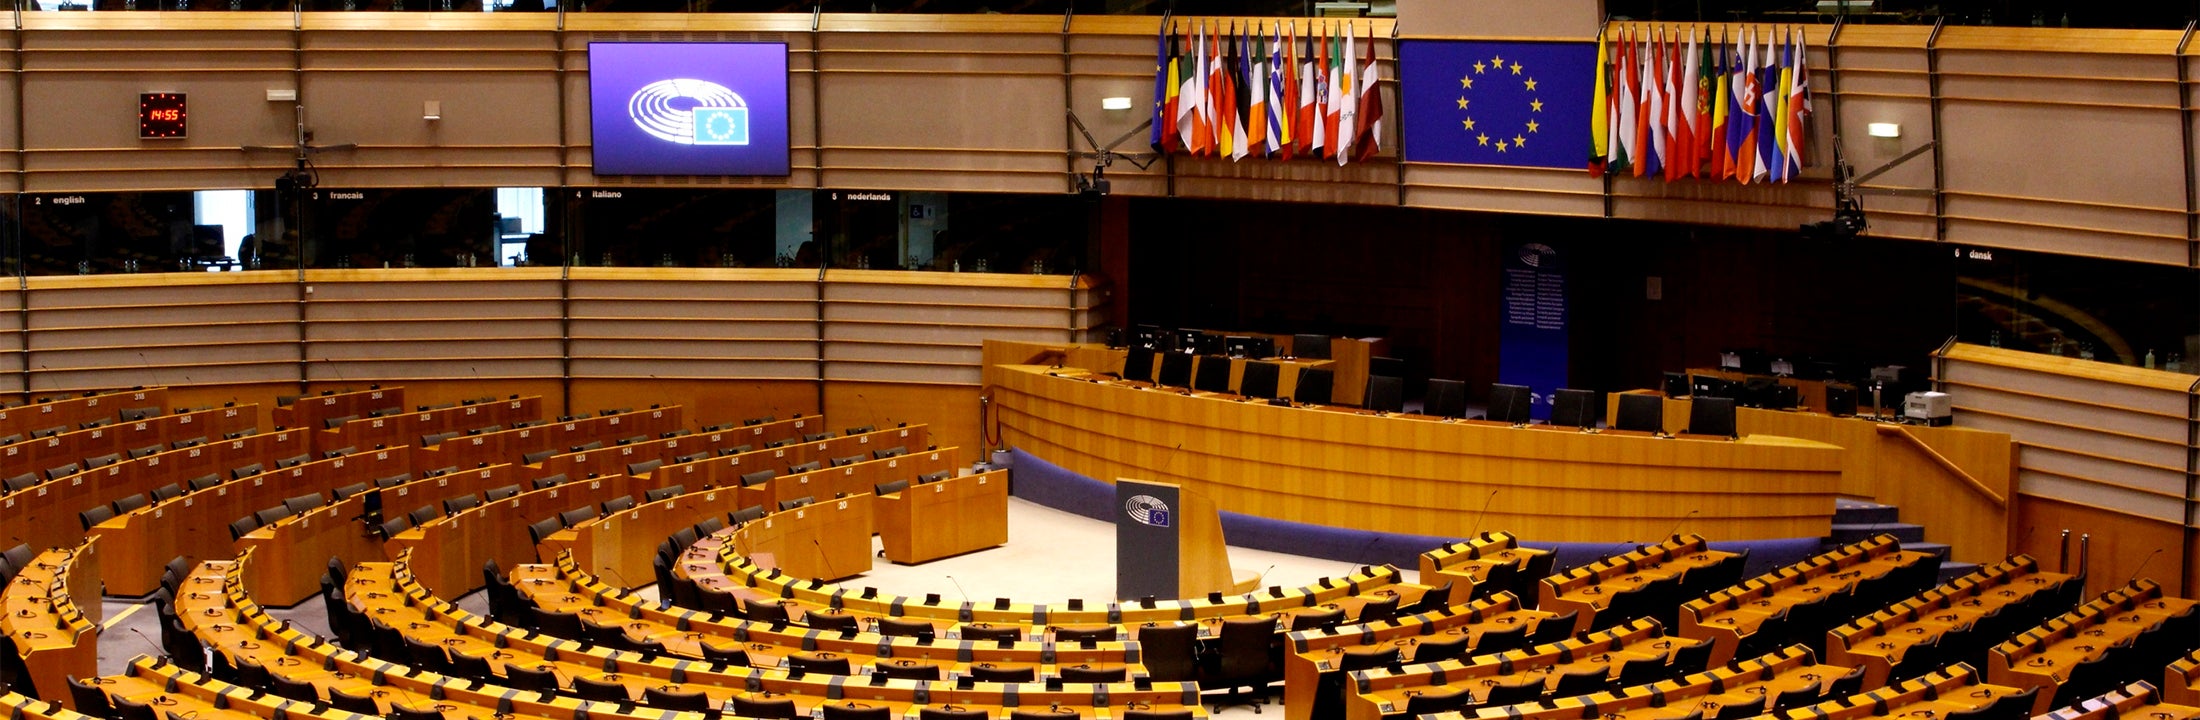 De grote vergaderzaal van het Europees parlement